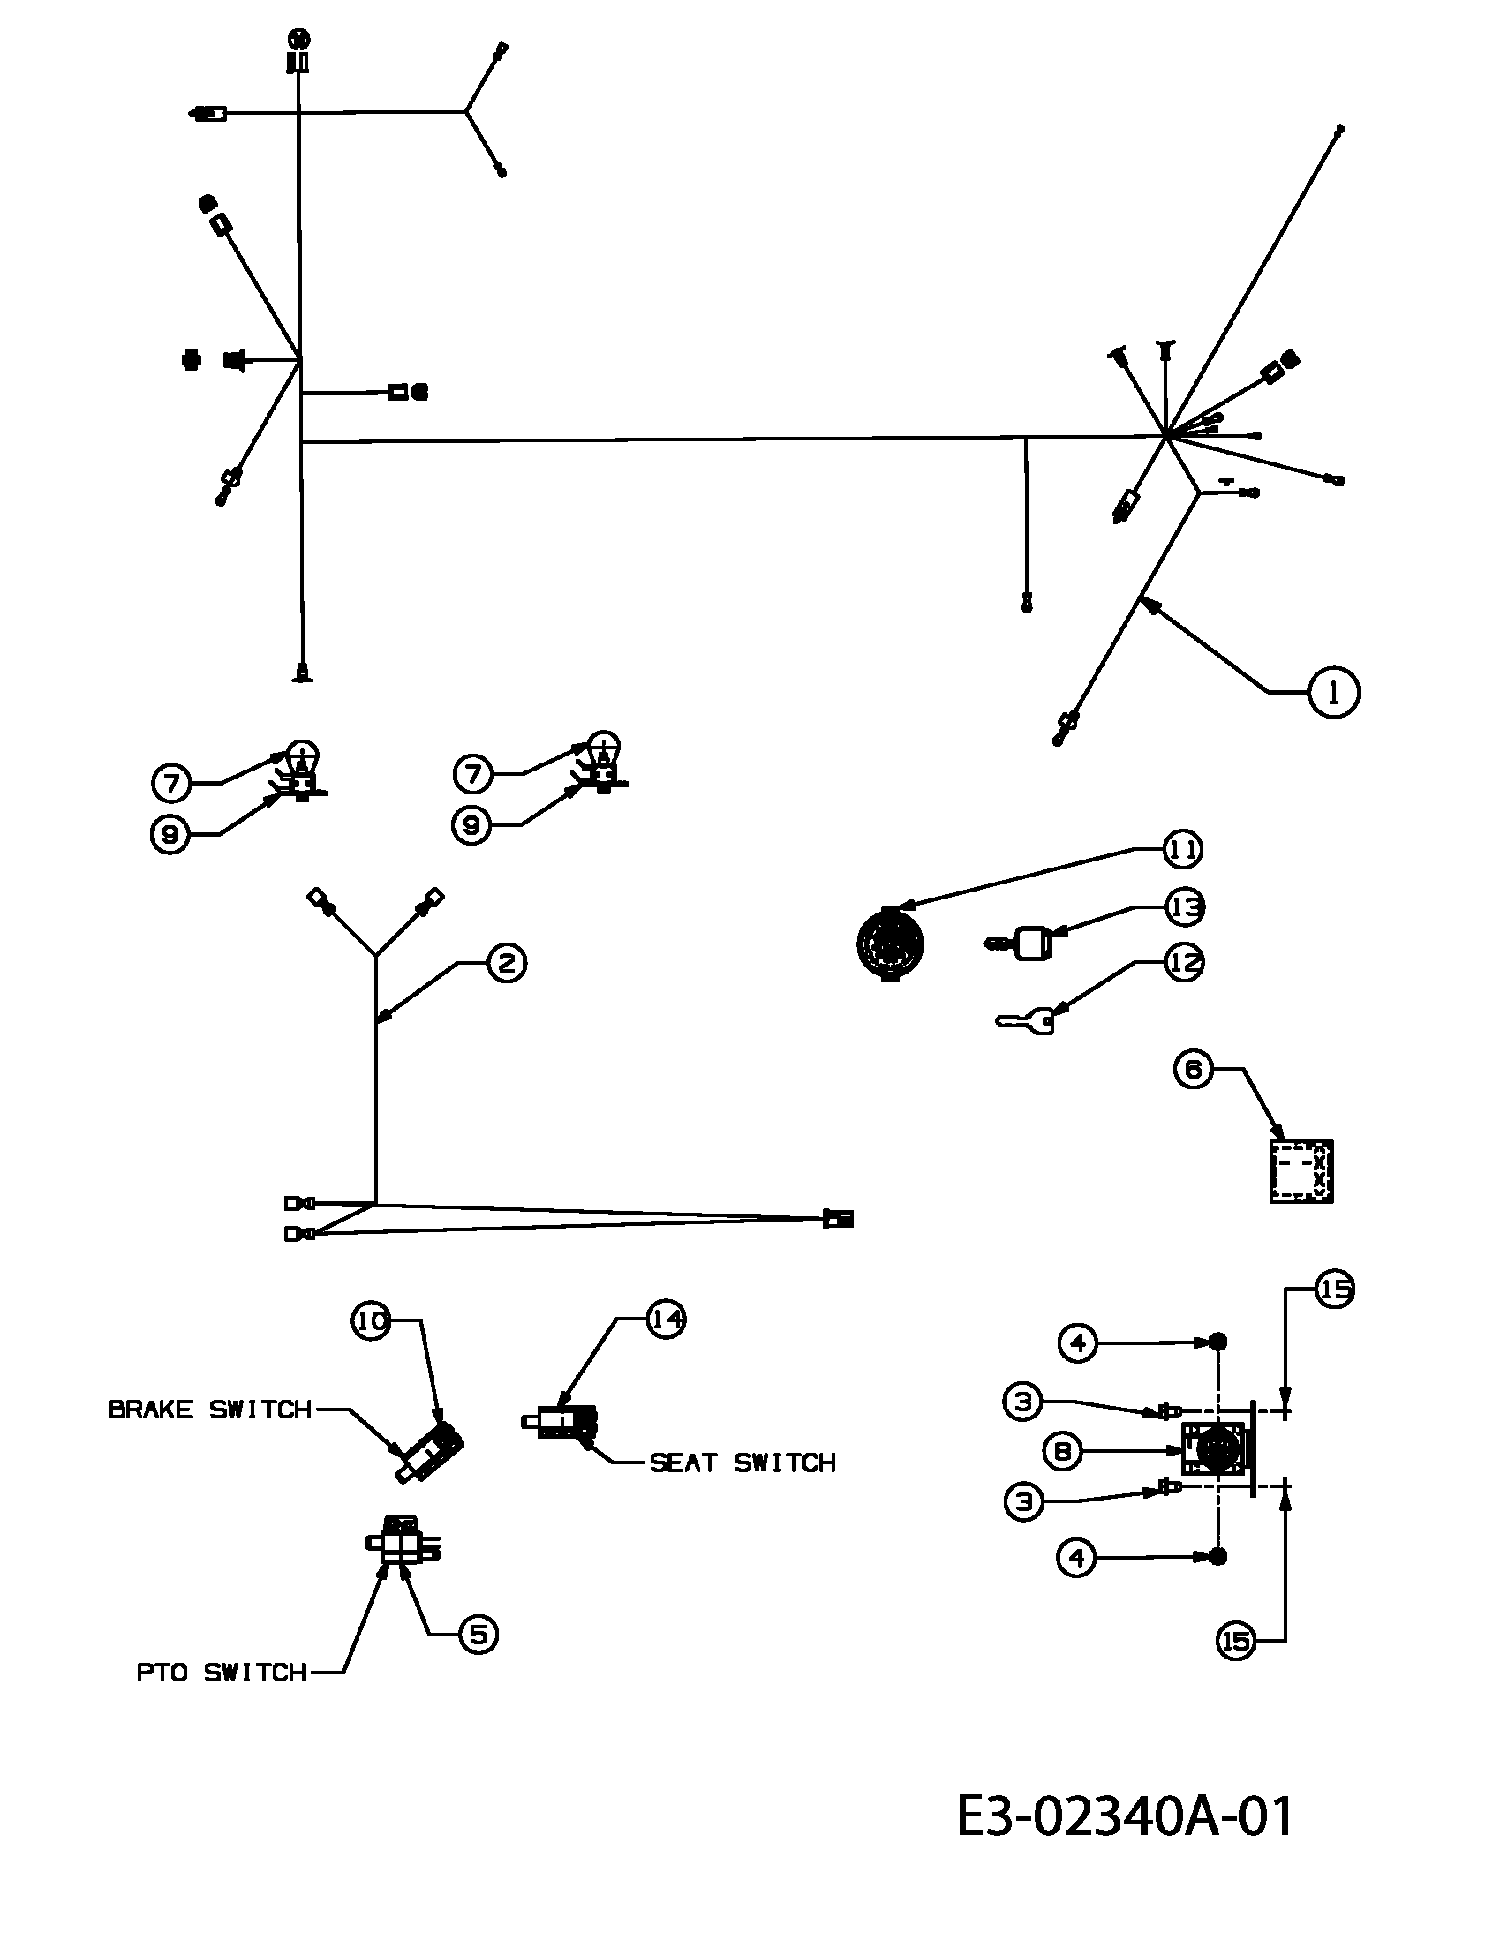 Elektroteile, 13CH507E628 (2005), RMH 514-92 A, Rasentraktoren, Raiffeisen